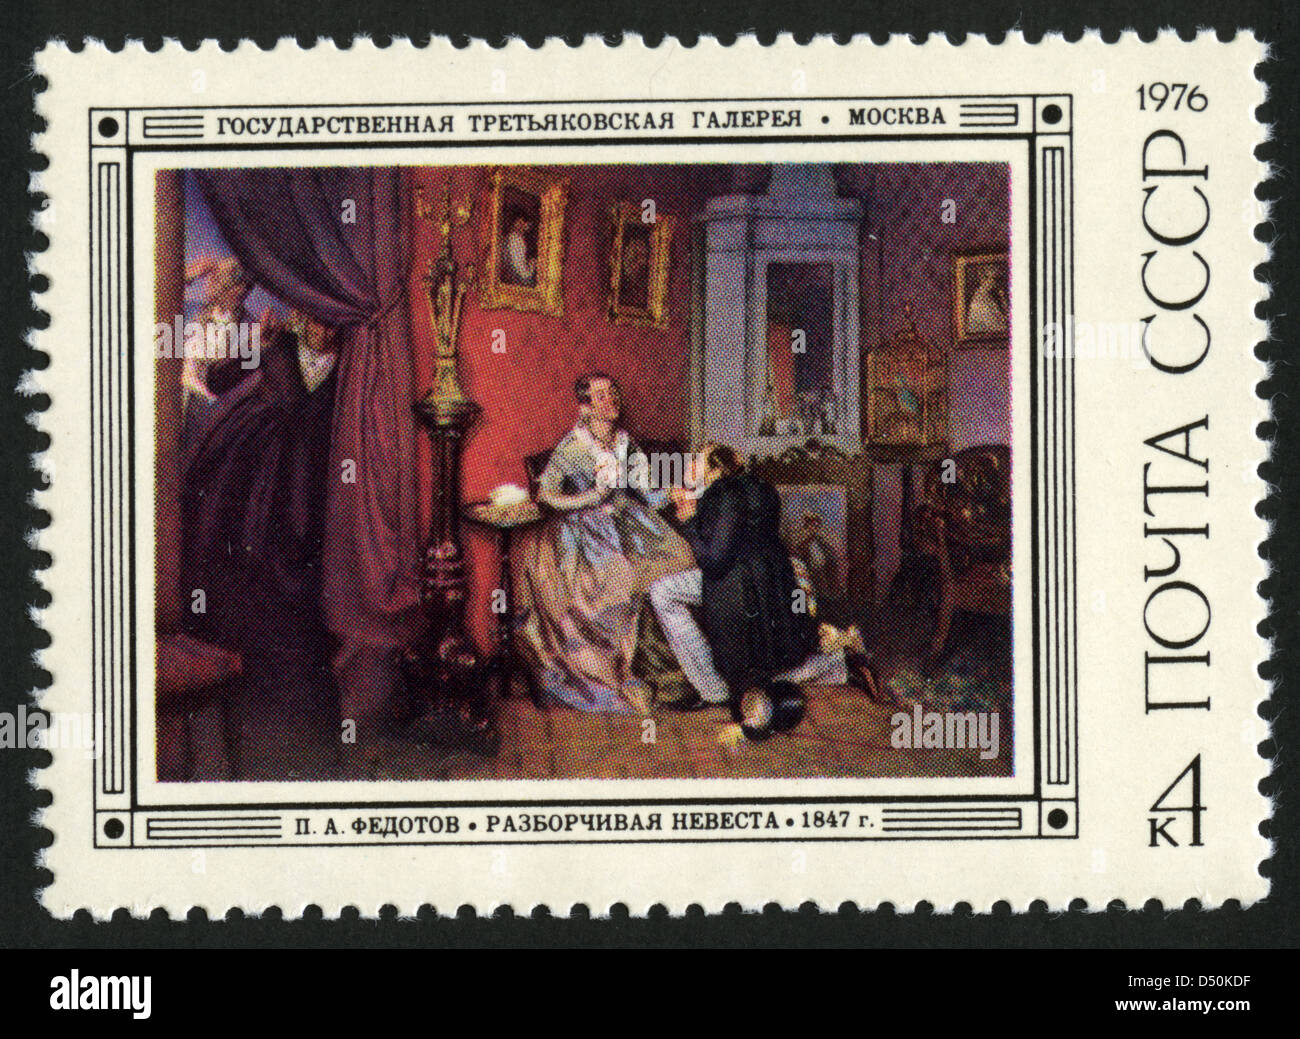 Urss,1976,année,mark post stamp, art Banque D'Images